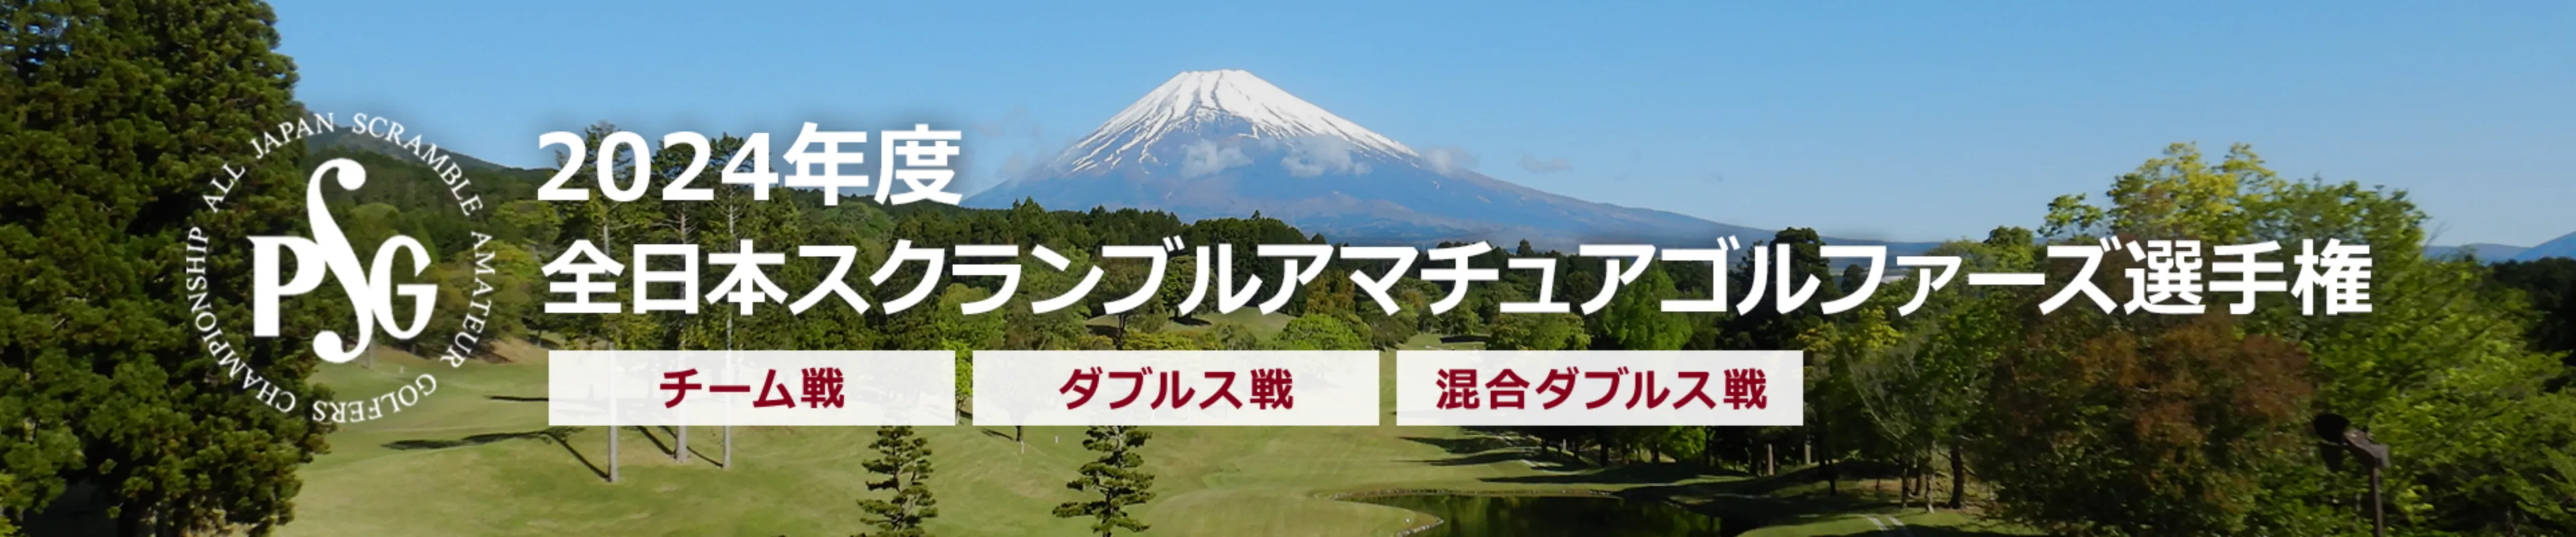 2024年度全日本スクランブルアマチュアゴルファーズ選手権